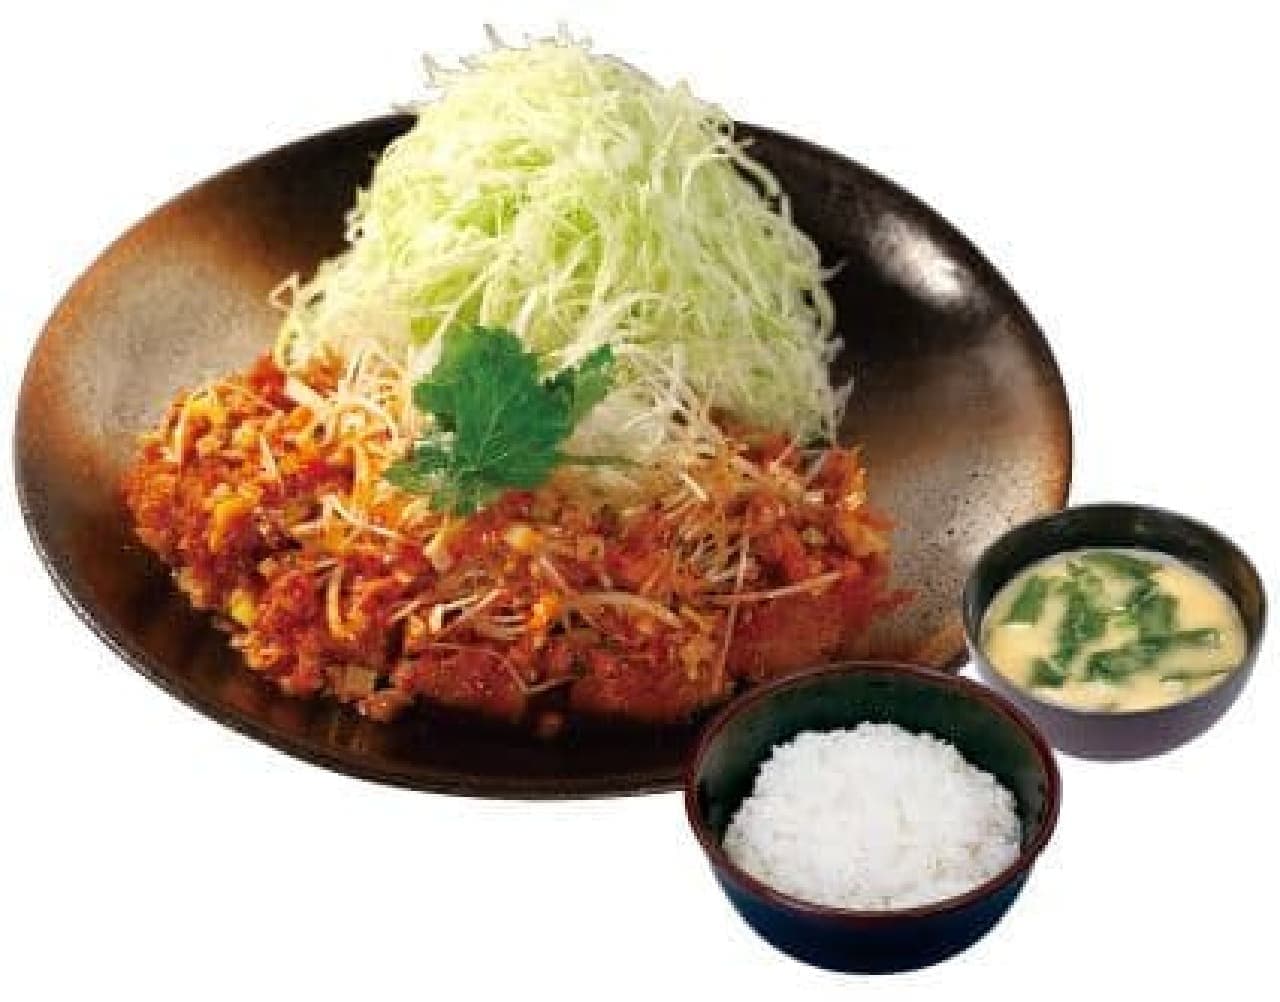 Matsunoya Matsunoya "White-haired green onions and glitter salt sauce scissors and set meal"